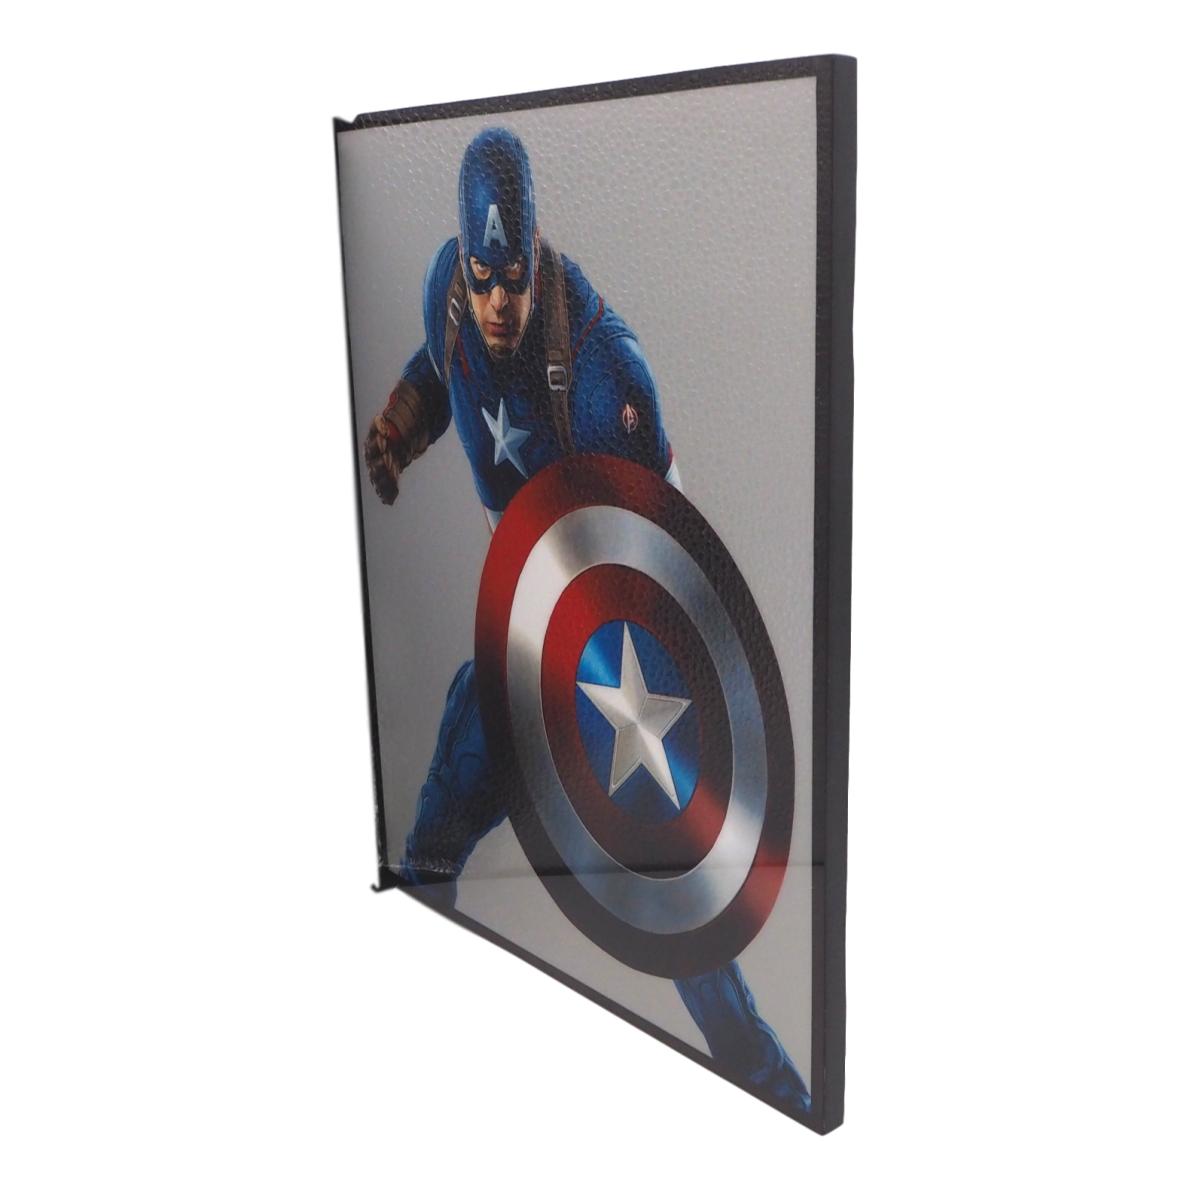 楽天市場 送料無料 キャプテン アメリカ 2 Captain America アートパネル 壁掛け 据え置き 壁掛けフック付き アーティスト Popパネル インテリア アートフレーム ポスター Cool クール 面白い かっこいい アート 雑貨 カフェ リビング 額付き 額縁 オシャレ